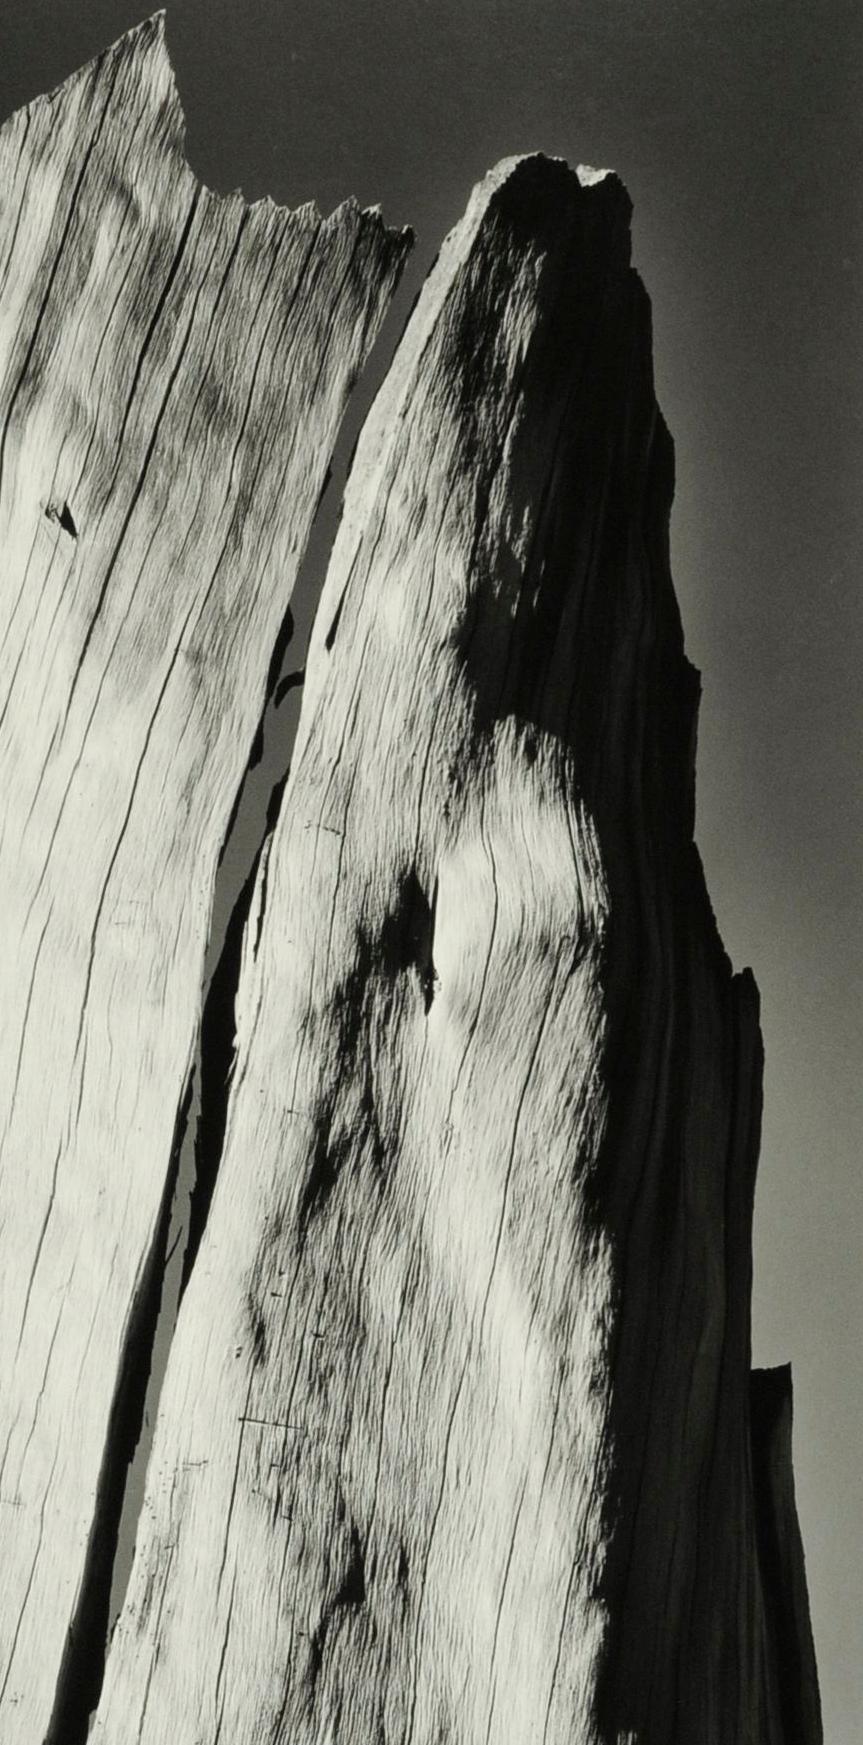 White Stump, Sierra Nevada, California - Photograph by Ansel Adams